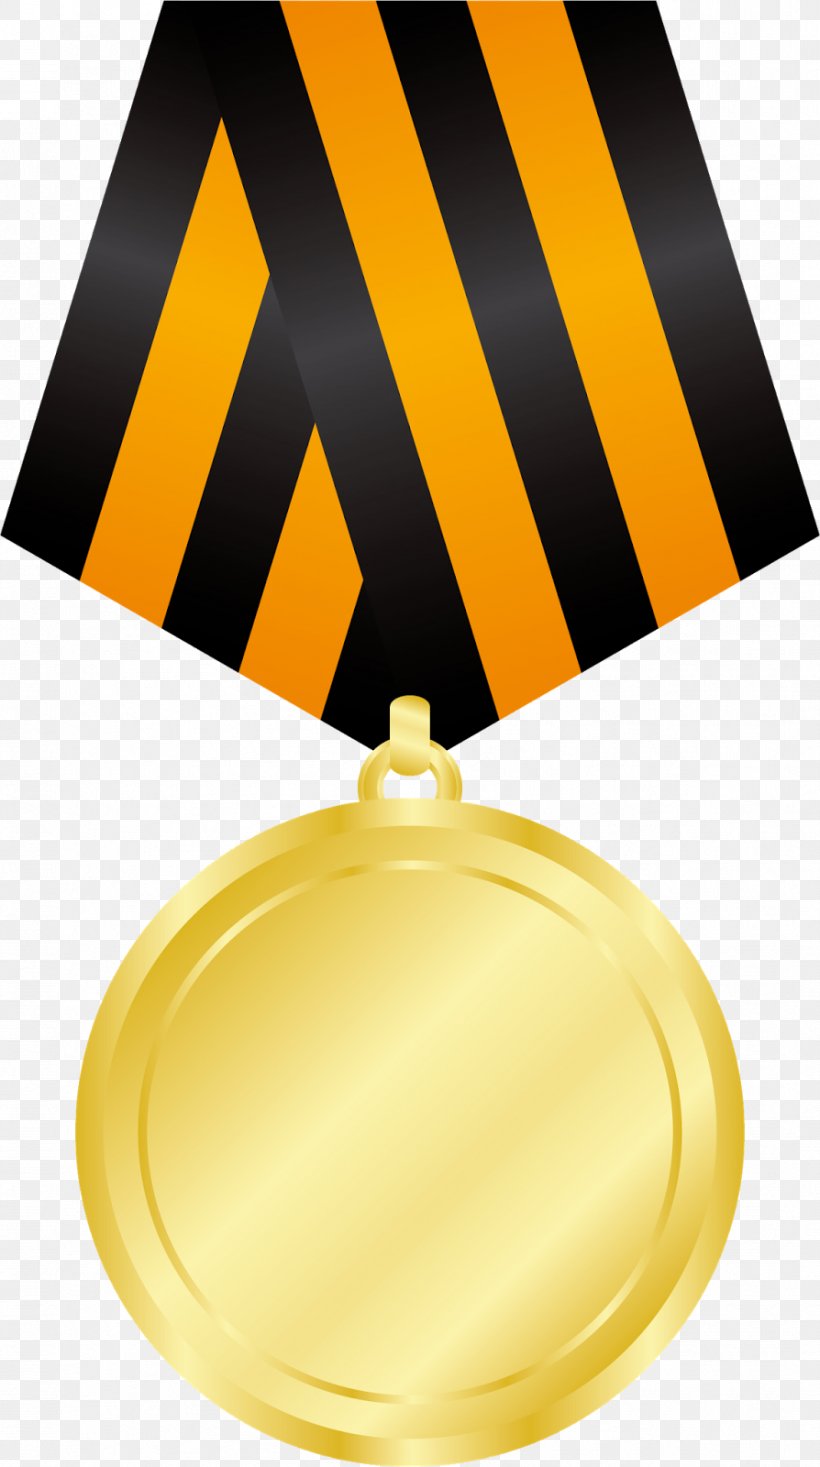 Gold Medal Silver Medal Clip Art, PNG, 894x1600px, Medal, Award, Bronze Medal, Gold Medal, Image File Formats Download Free